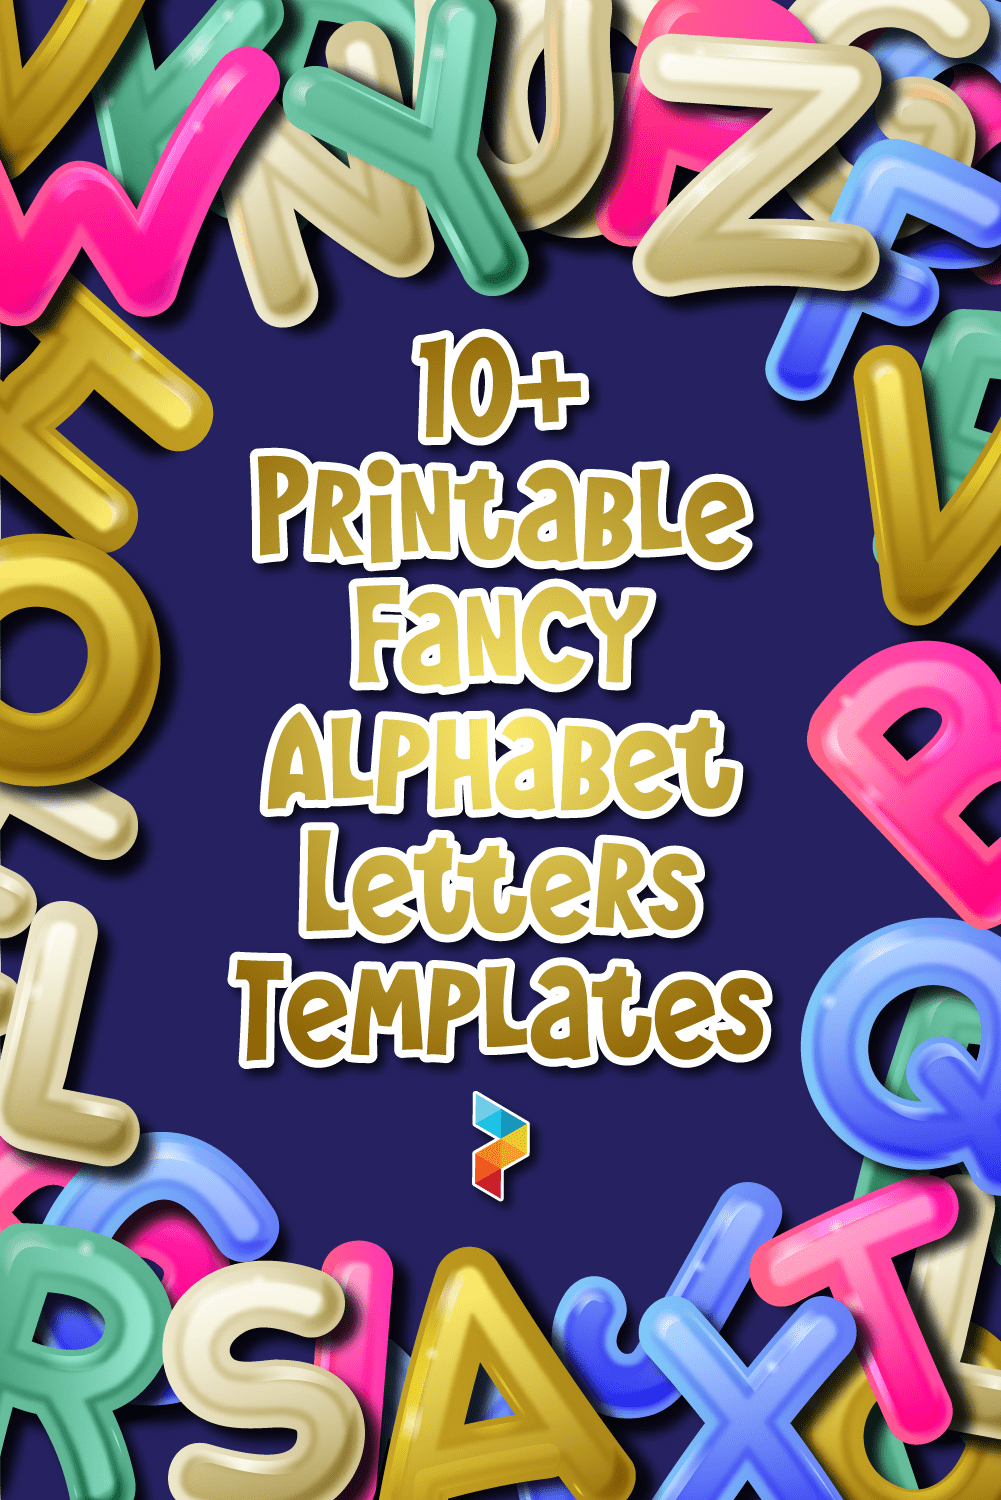 Free Fancy Alphabet Letters Templates